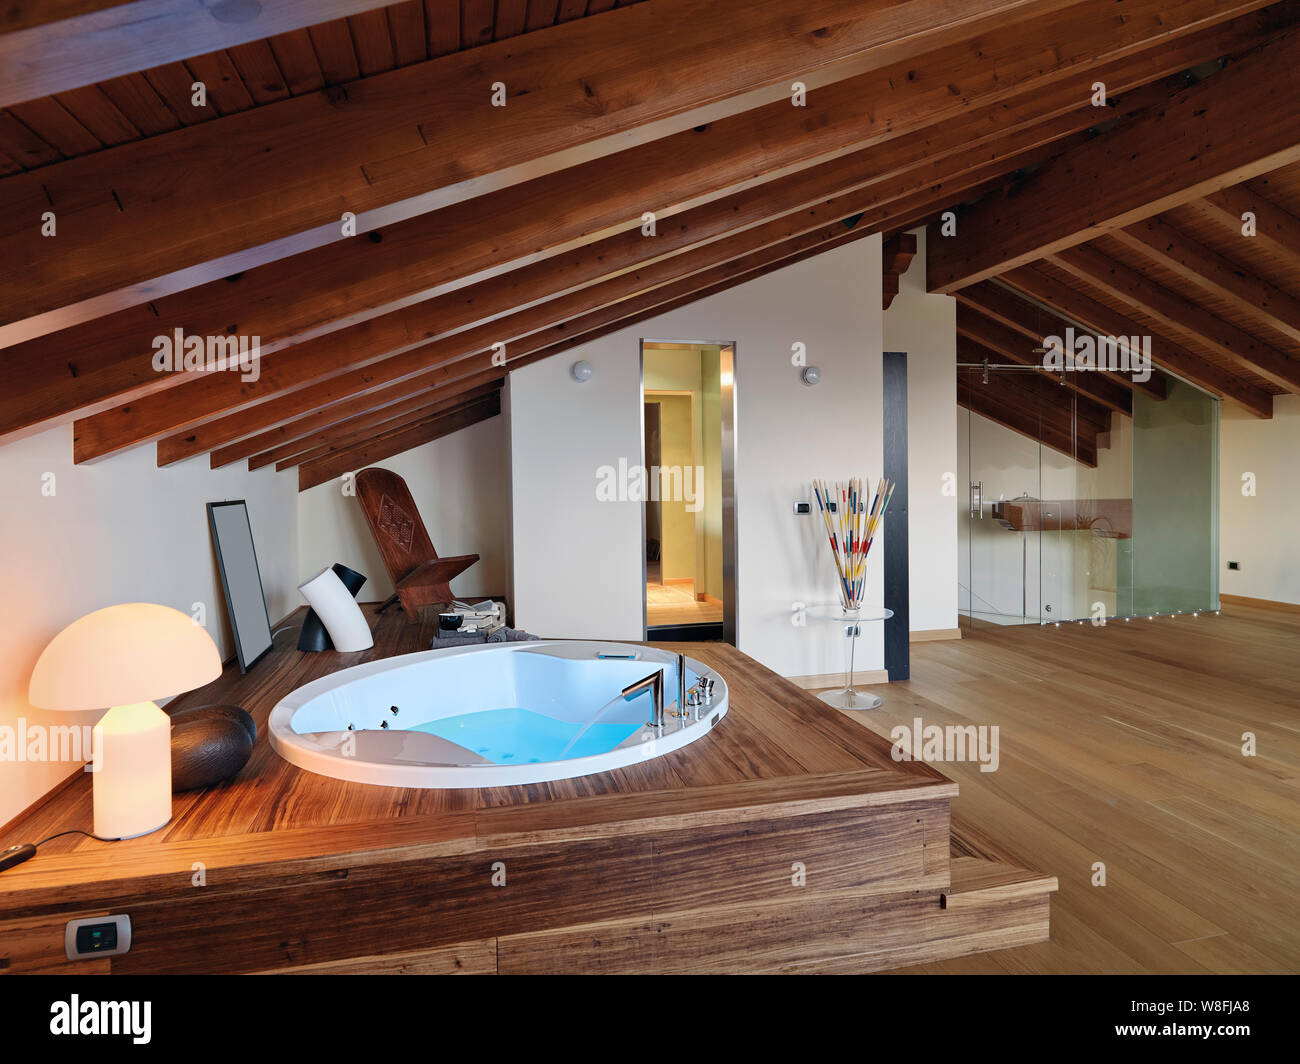 Scatti di interni di un moderno bagno in camera attico in primo piano la vasca idromassaggio il pavimento e il soffitto sono realizzati in legno Foto Stock